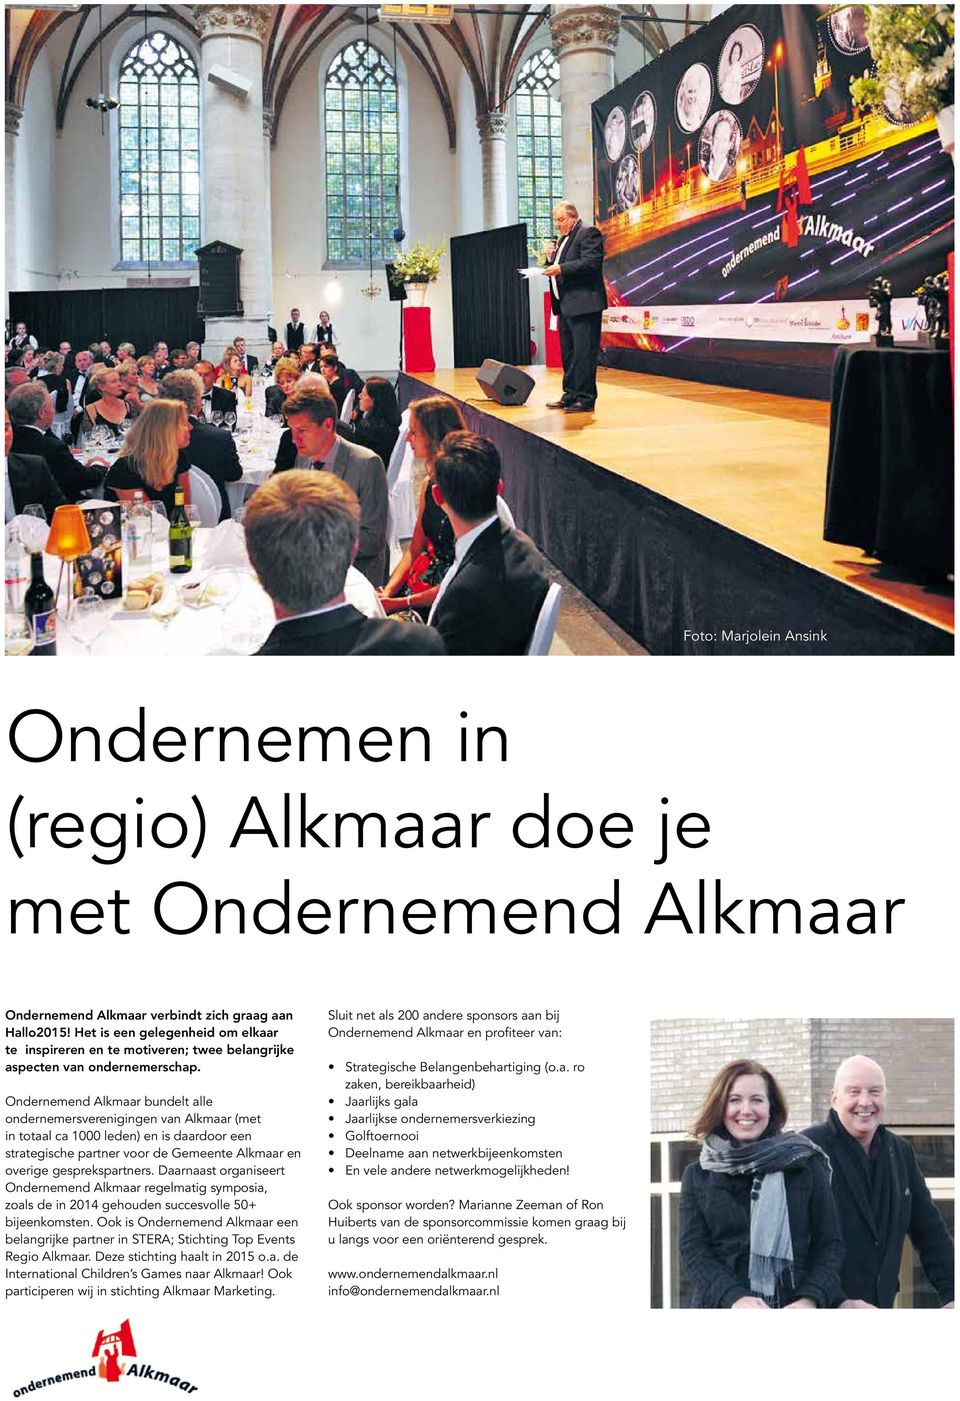 Ondernemend Alkmaar bundelt alle ondernemersverenigingen van Alkmaar (met in totaal ca 1000 leden) en is daardoor een strategische partner voor de Gemeente Alkmaar en overige gesprekspartners.